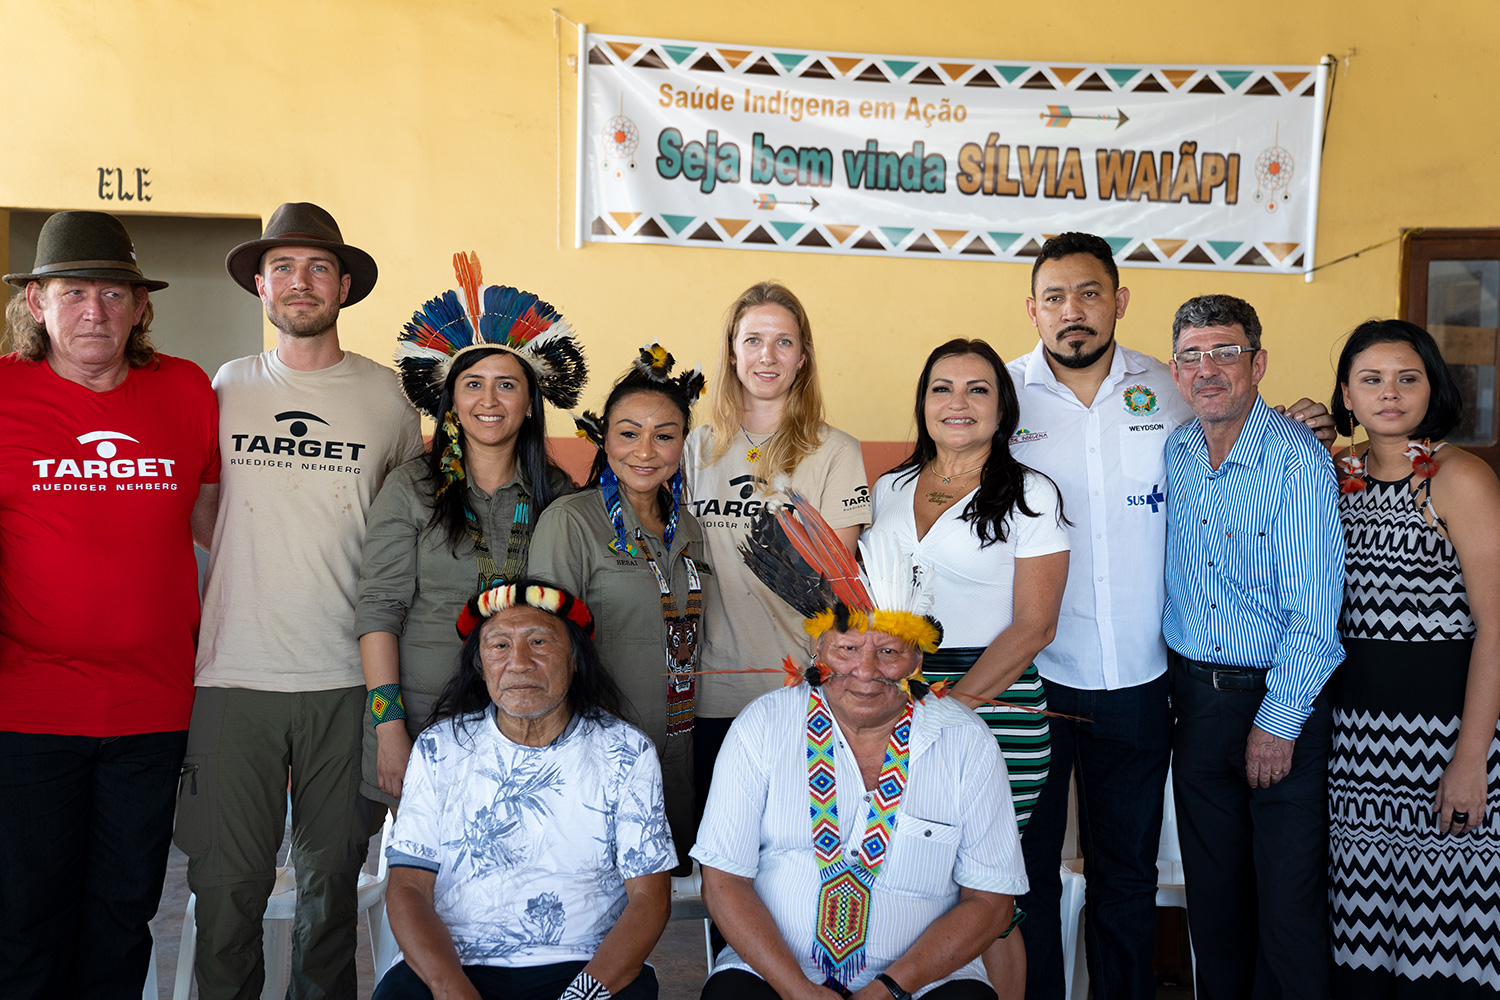 Vertreter verschiedener indigener Gruppen, der SESAI, der Indianerschutzbehörder FUNAI und der Regierung waren zur Vertragsunterzeichnung gekommen